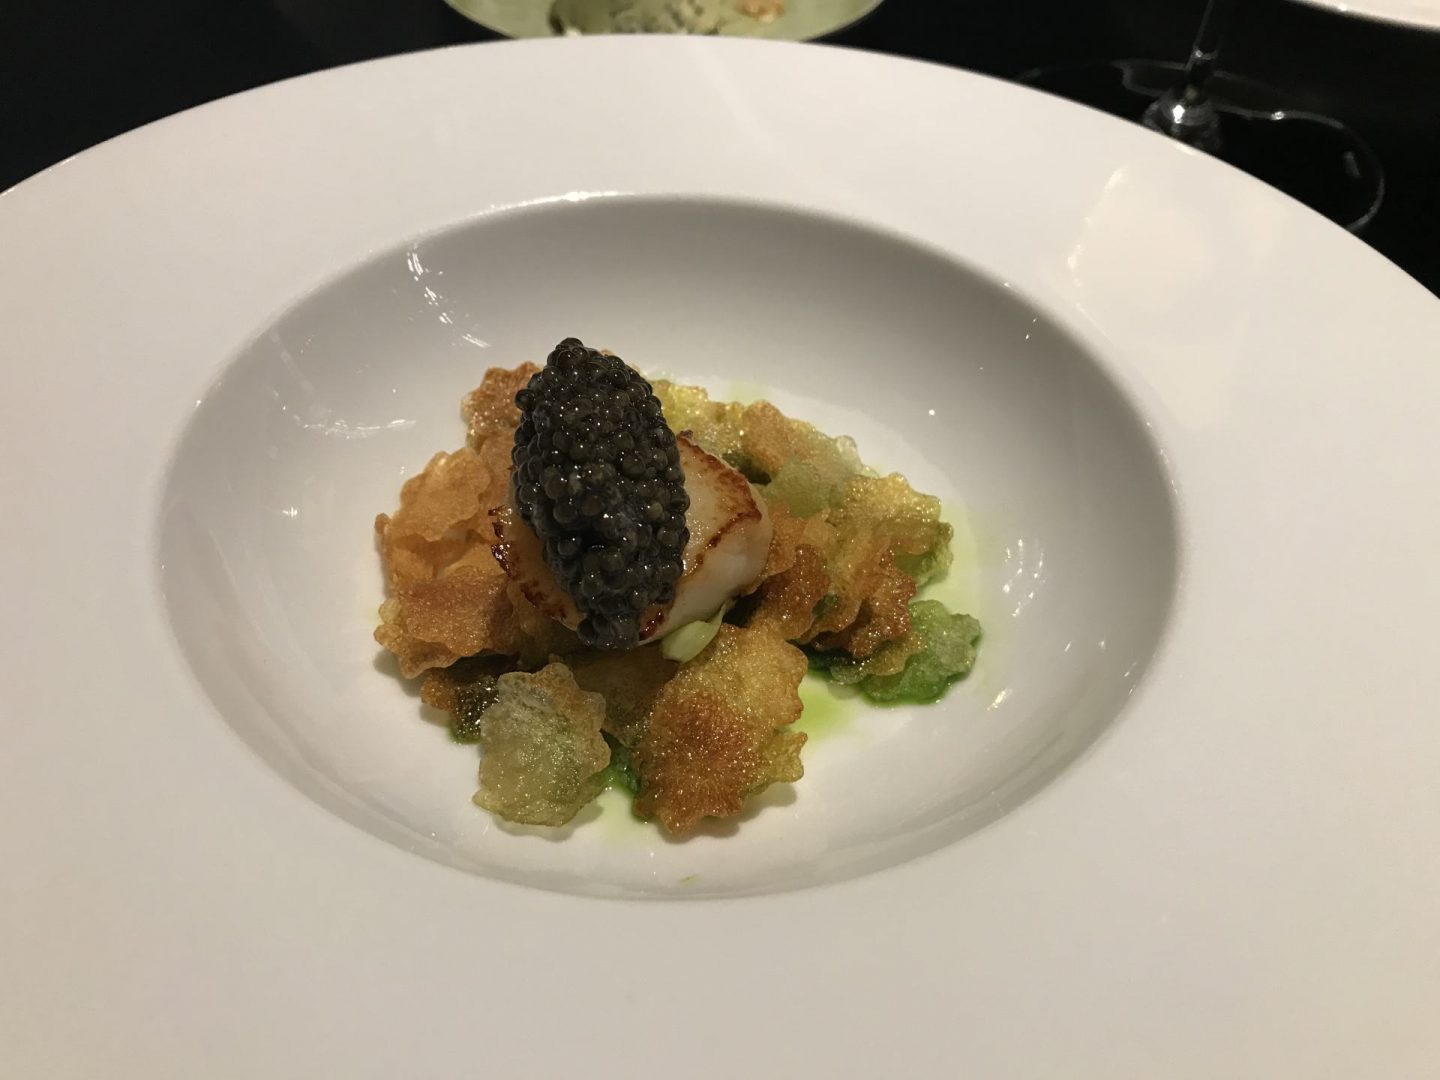 Erfahrung Bewertung Kritik Tim`s Kitchen Fürth Jakobsmuschel Vichyssoise Kaviar Foodblog Sternestulle